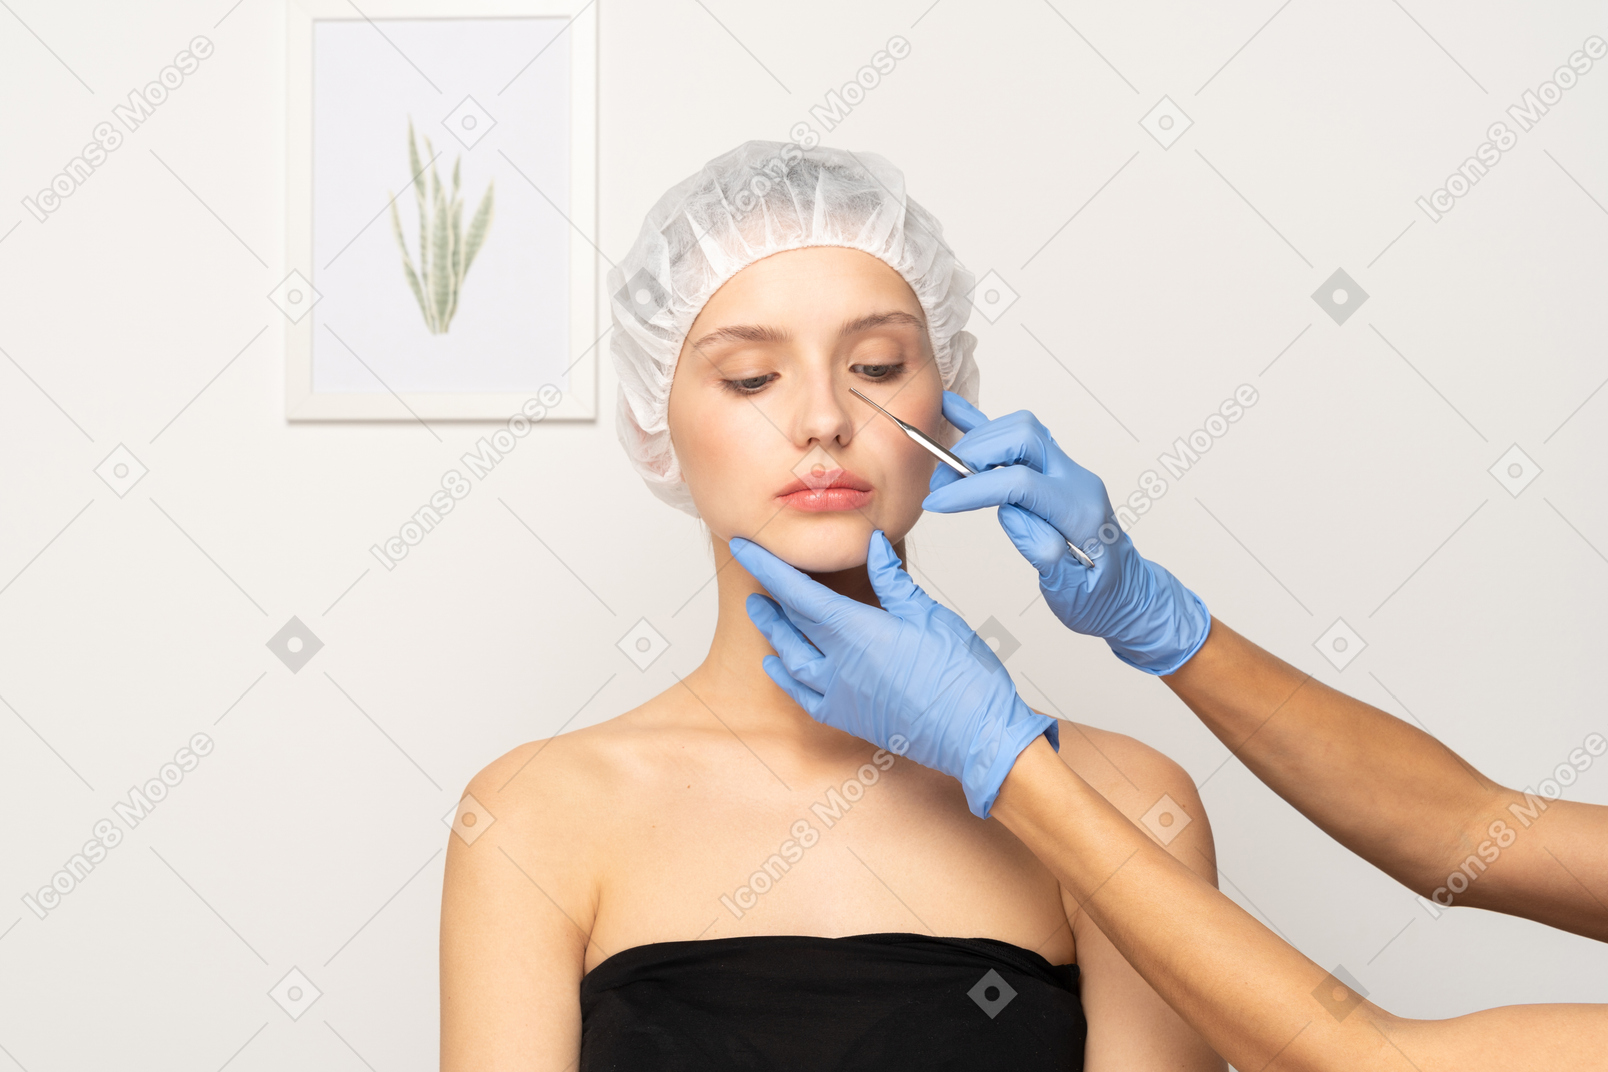 Chirurgien plasticien tenant un scalpel près du visage d'une jeune femme